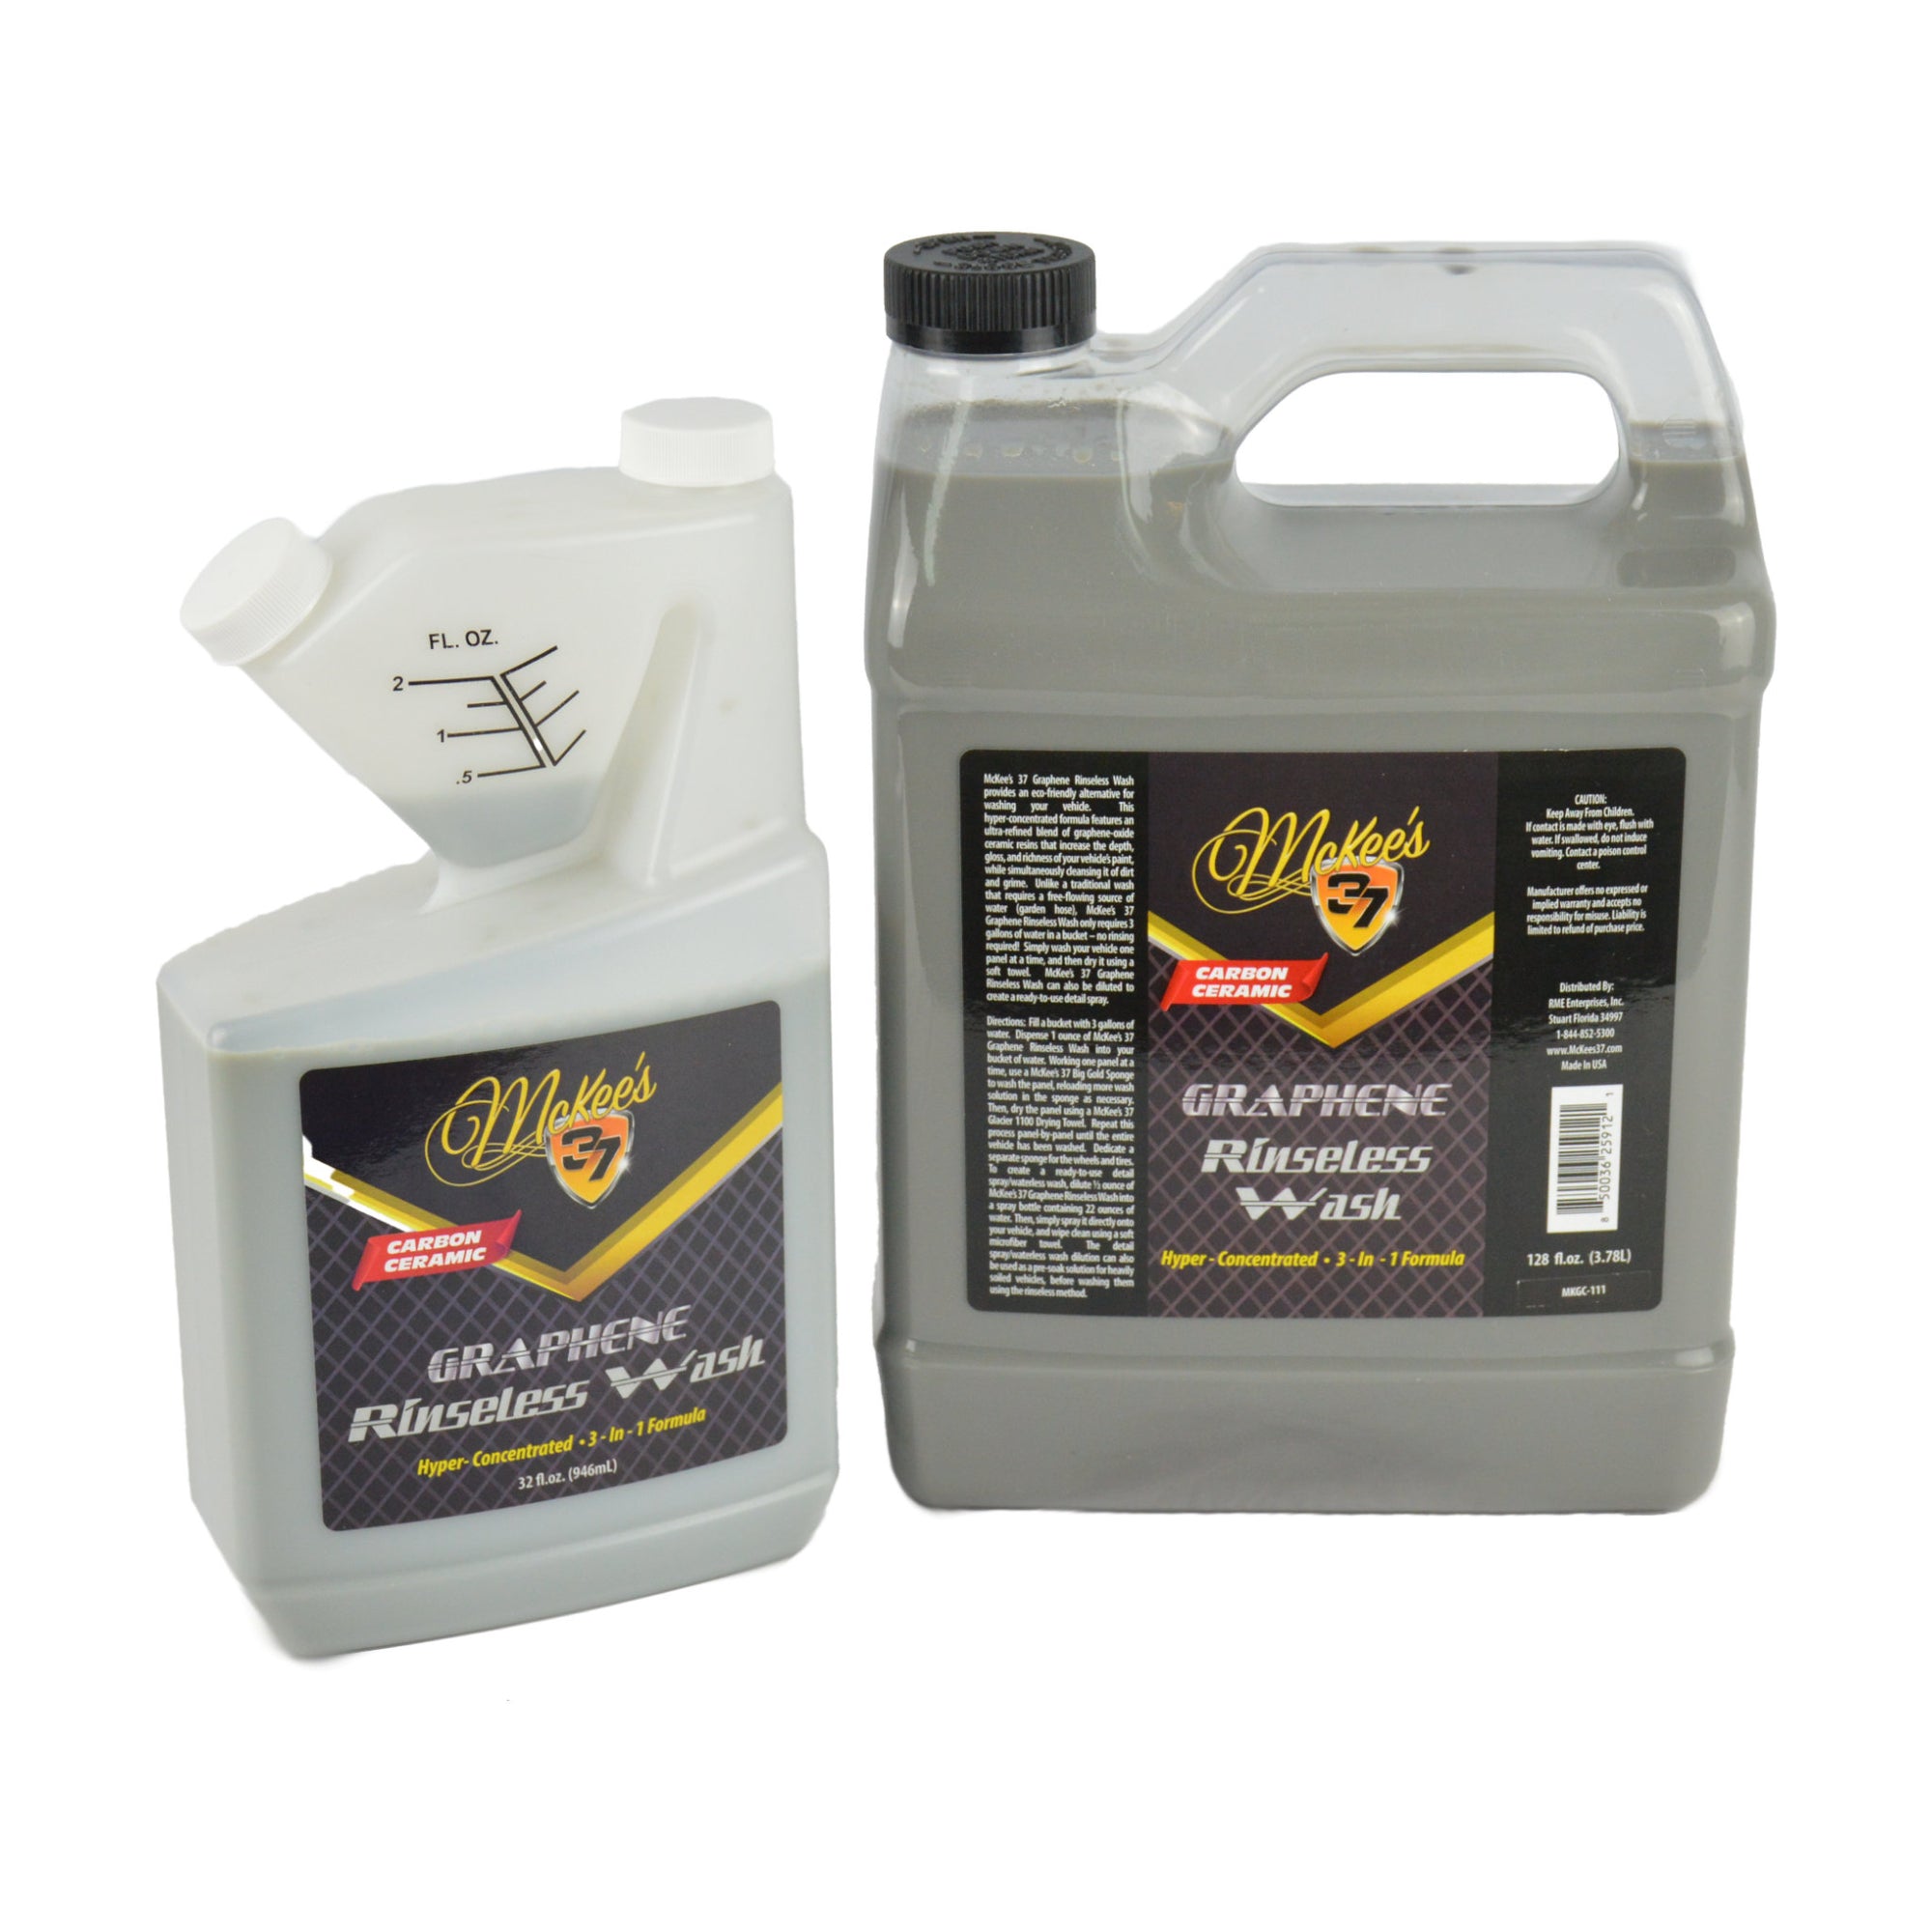 McKee's 37 MK37-540 Anti-Frost Windshield Washer Fluid, 32 oz. –